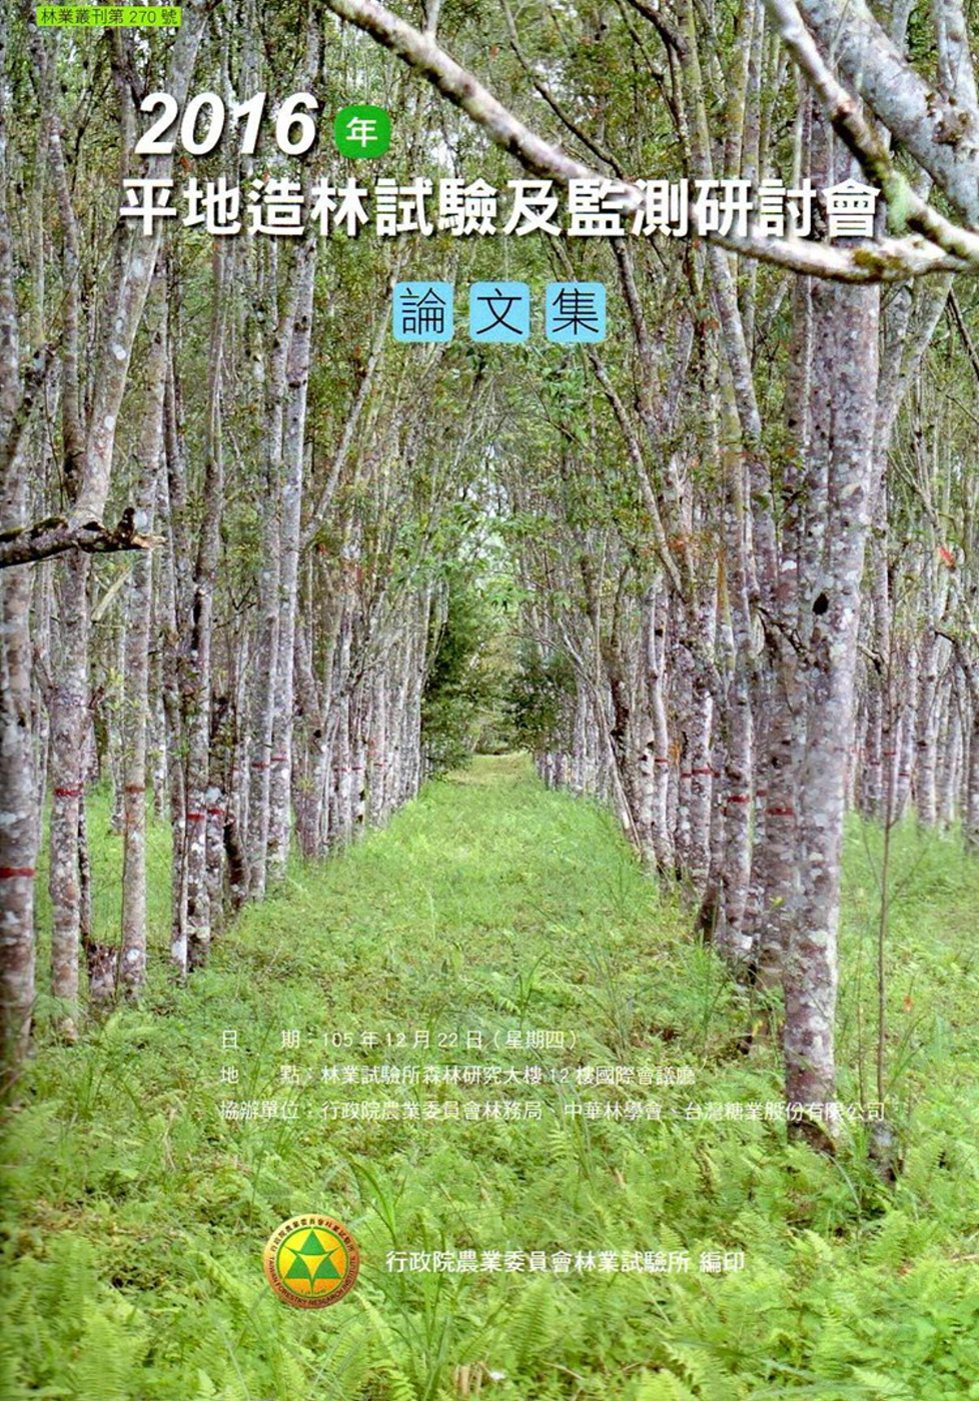 2016年平地造林試驗及監測研討會論文集